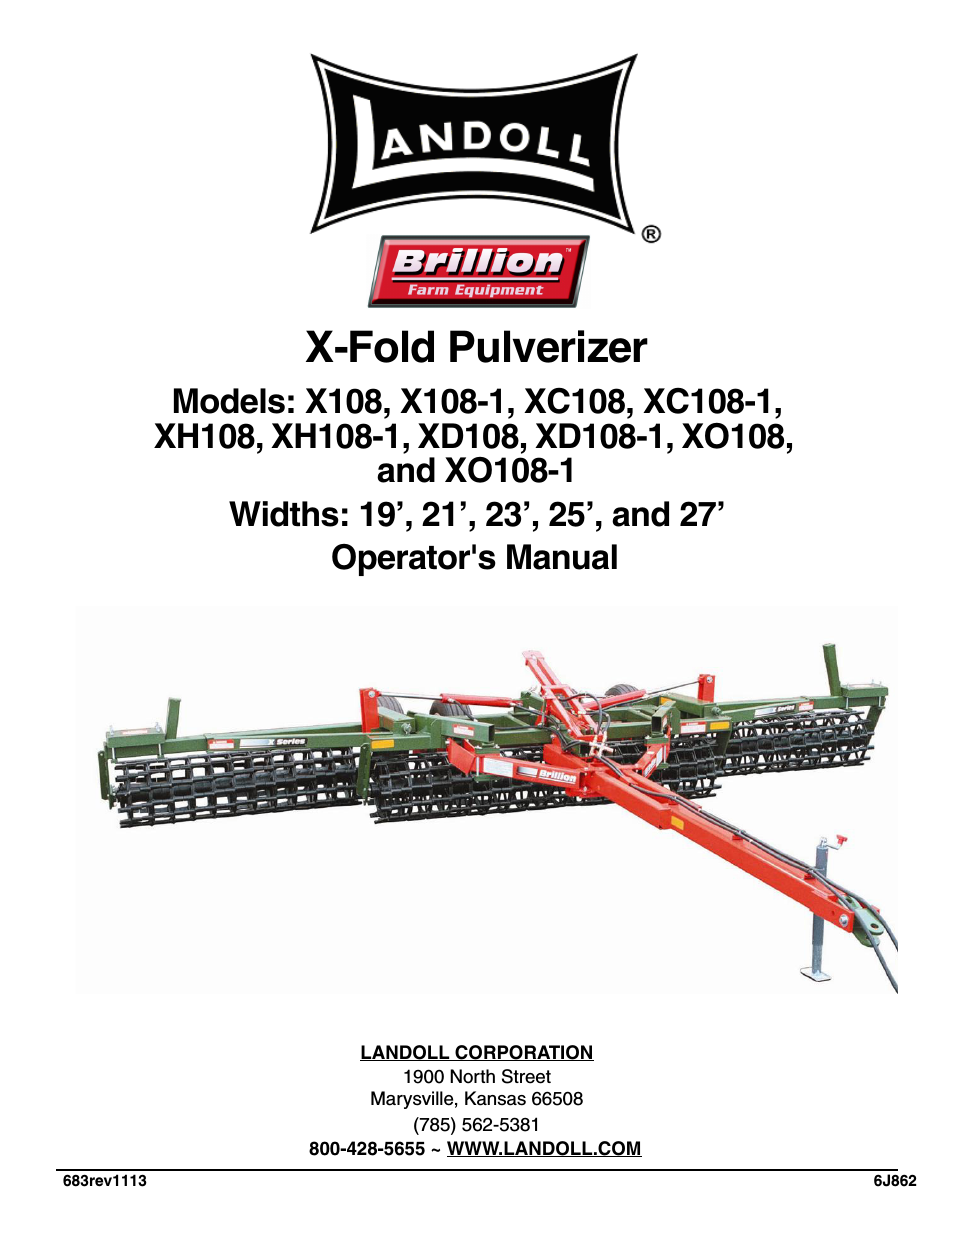 XD108/XD108-1 X-Fold Pulverizer